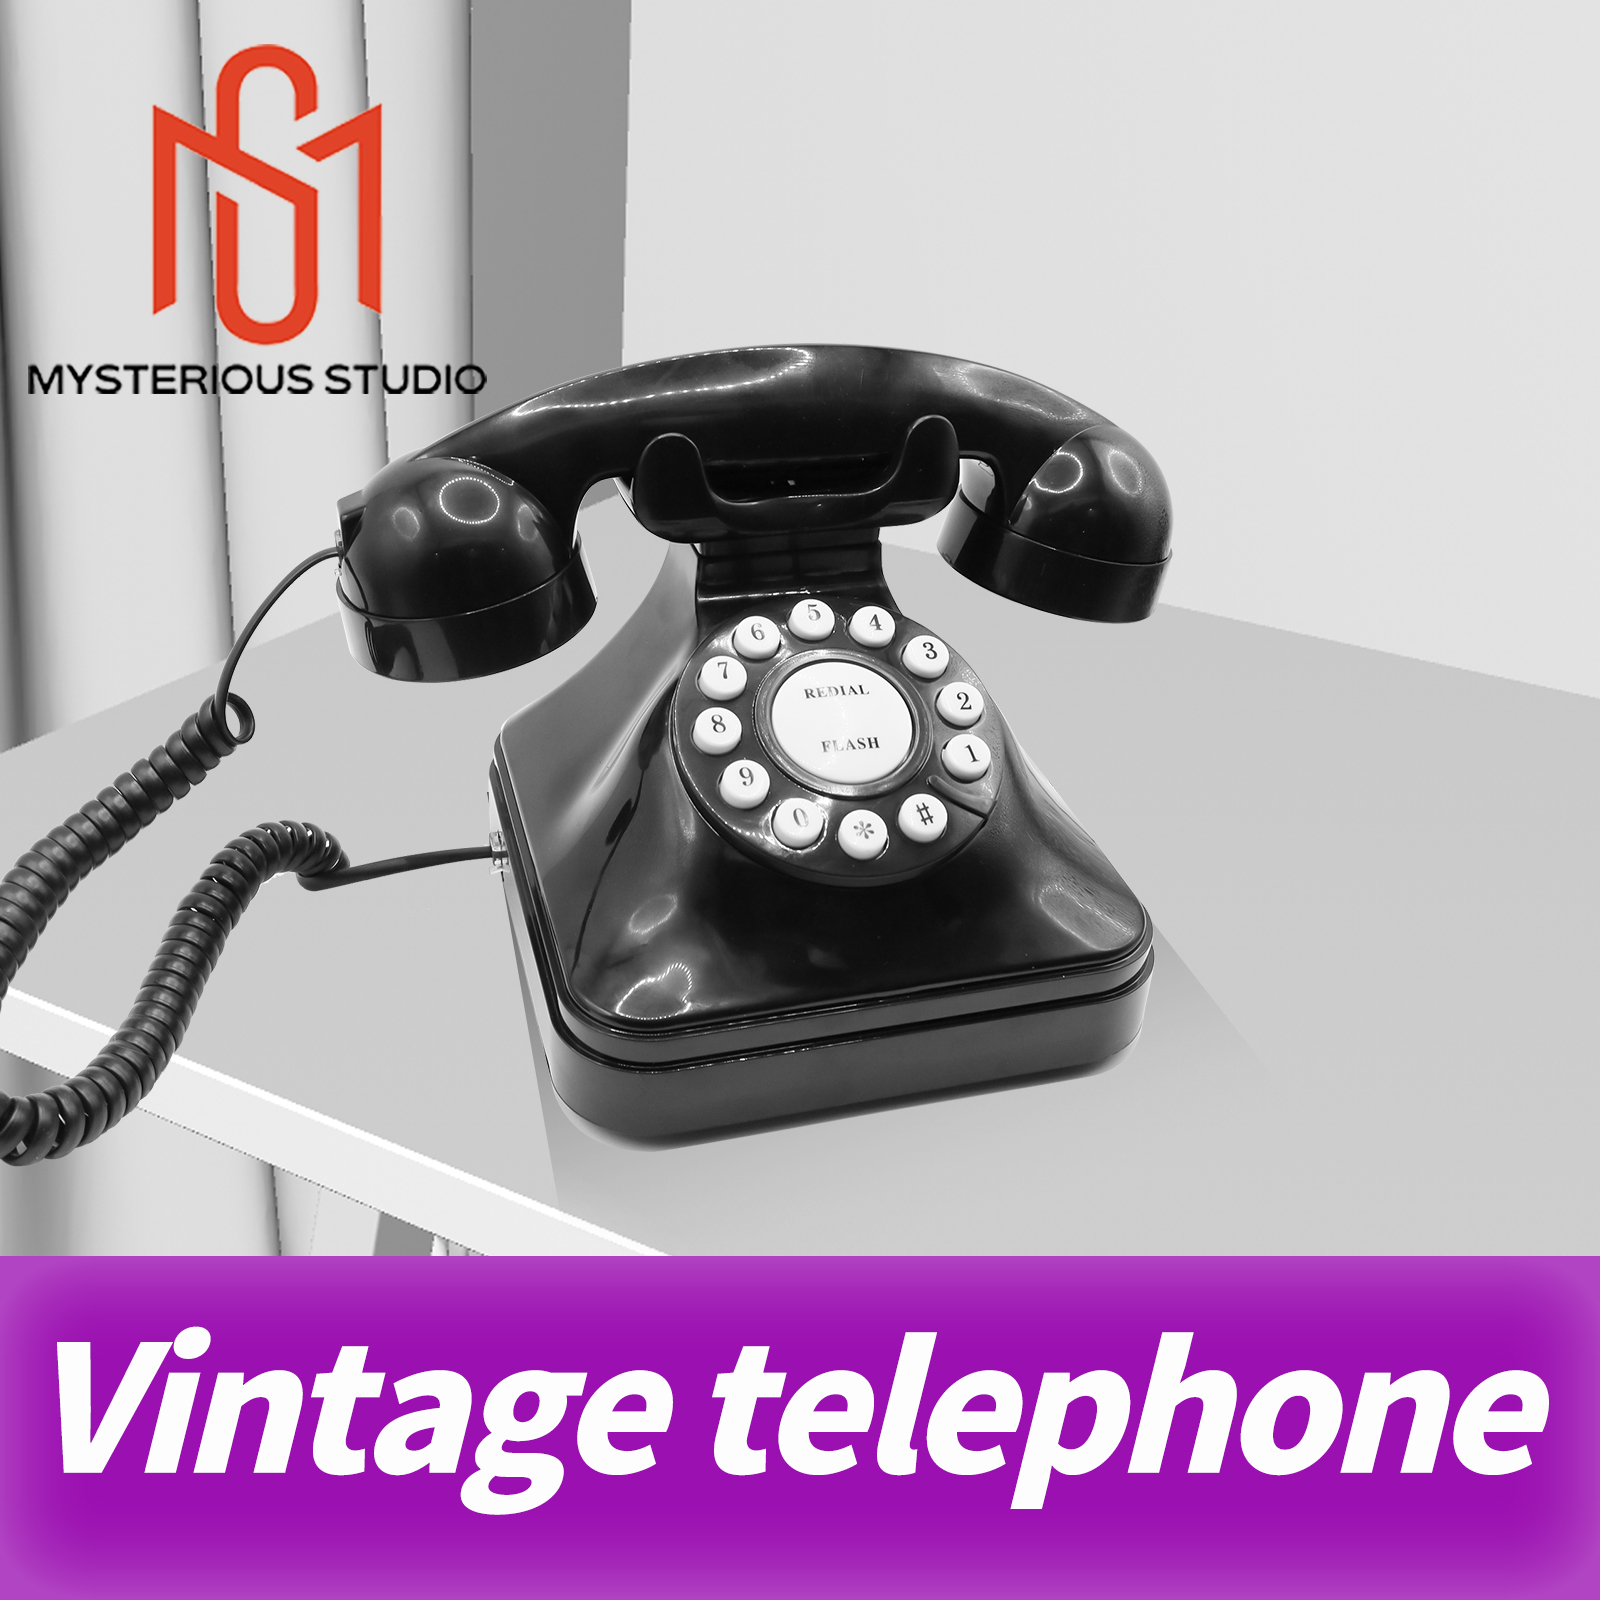 Gizemli Stüdyo Gizli Oda Kaçış Oyunu Mekanizması Elektronik Bulmaca Telefon Prop Telefon Arama Vintage Telefon